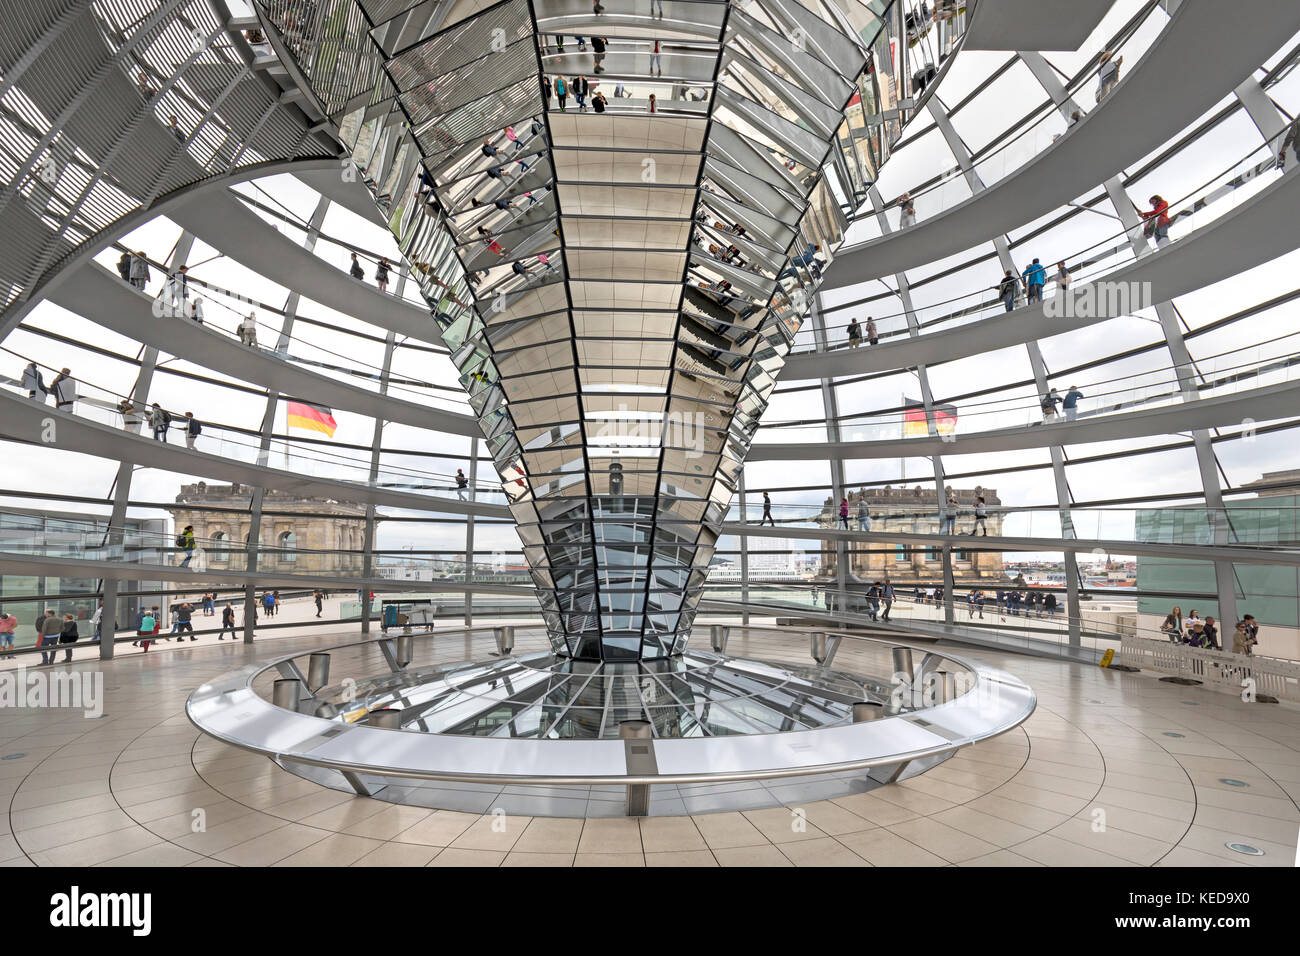 Reichstag, Berlin, Deutschland, Europa Stockfoto